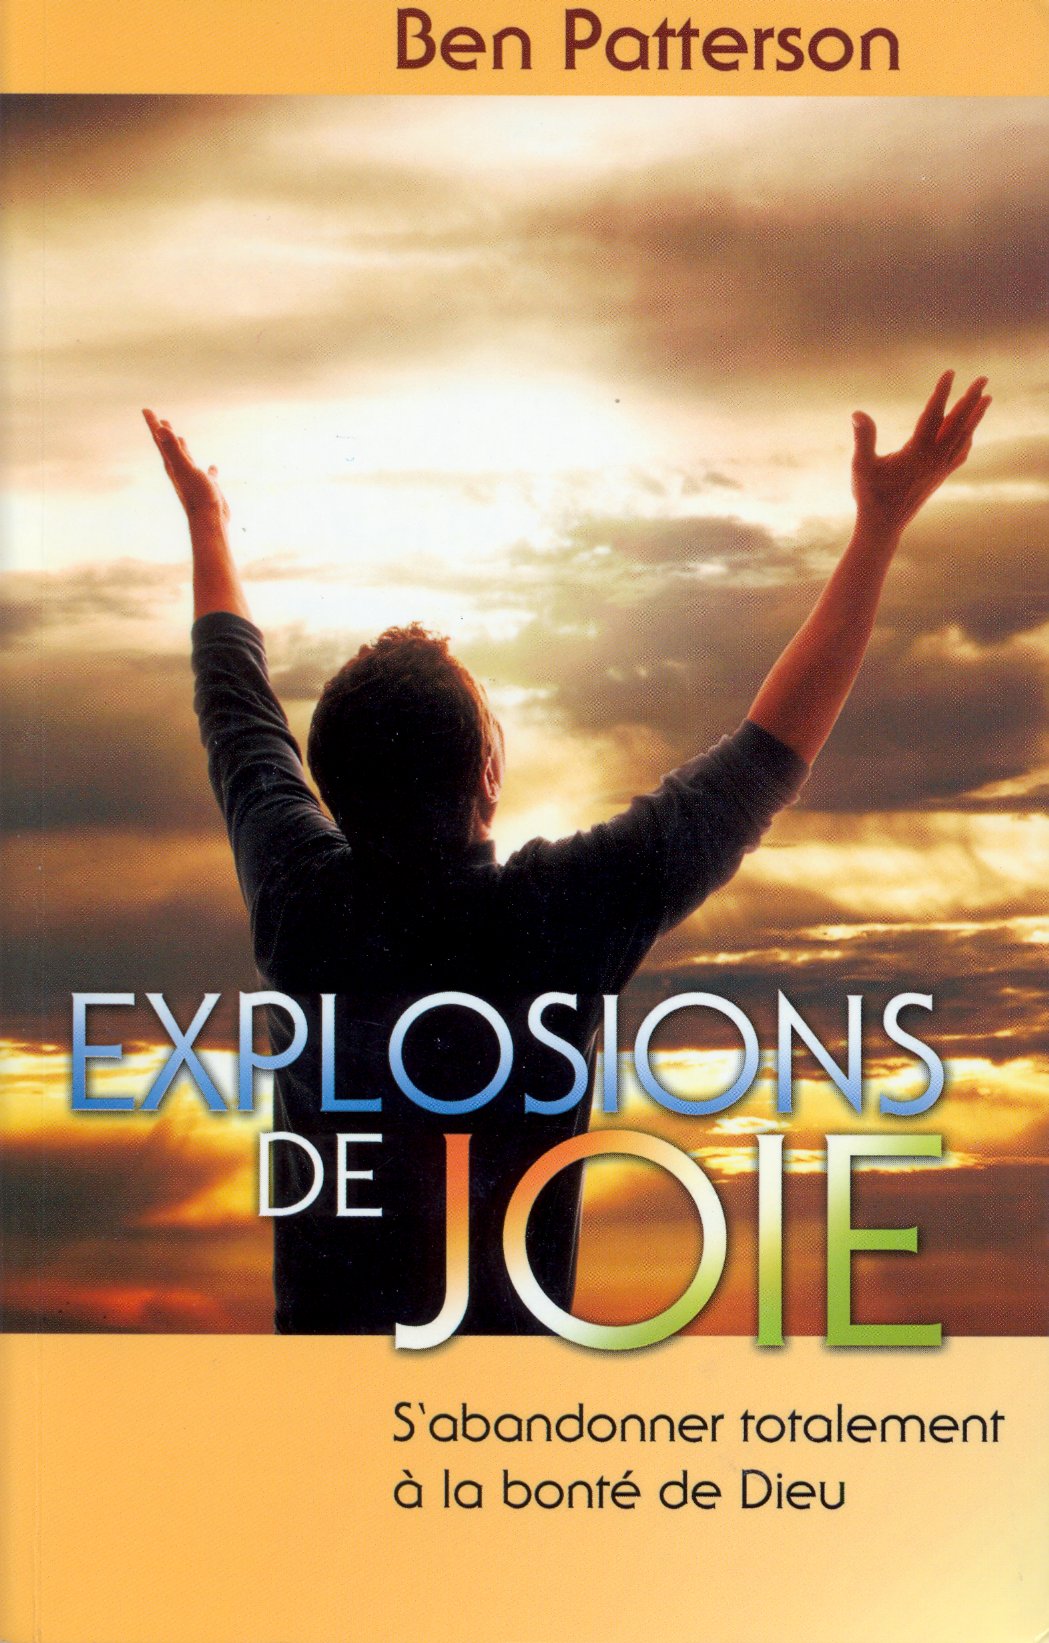 Explosions de joie - S'abandonner totalement à la bonté de Dieu